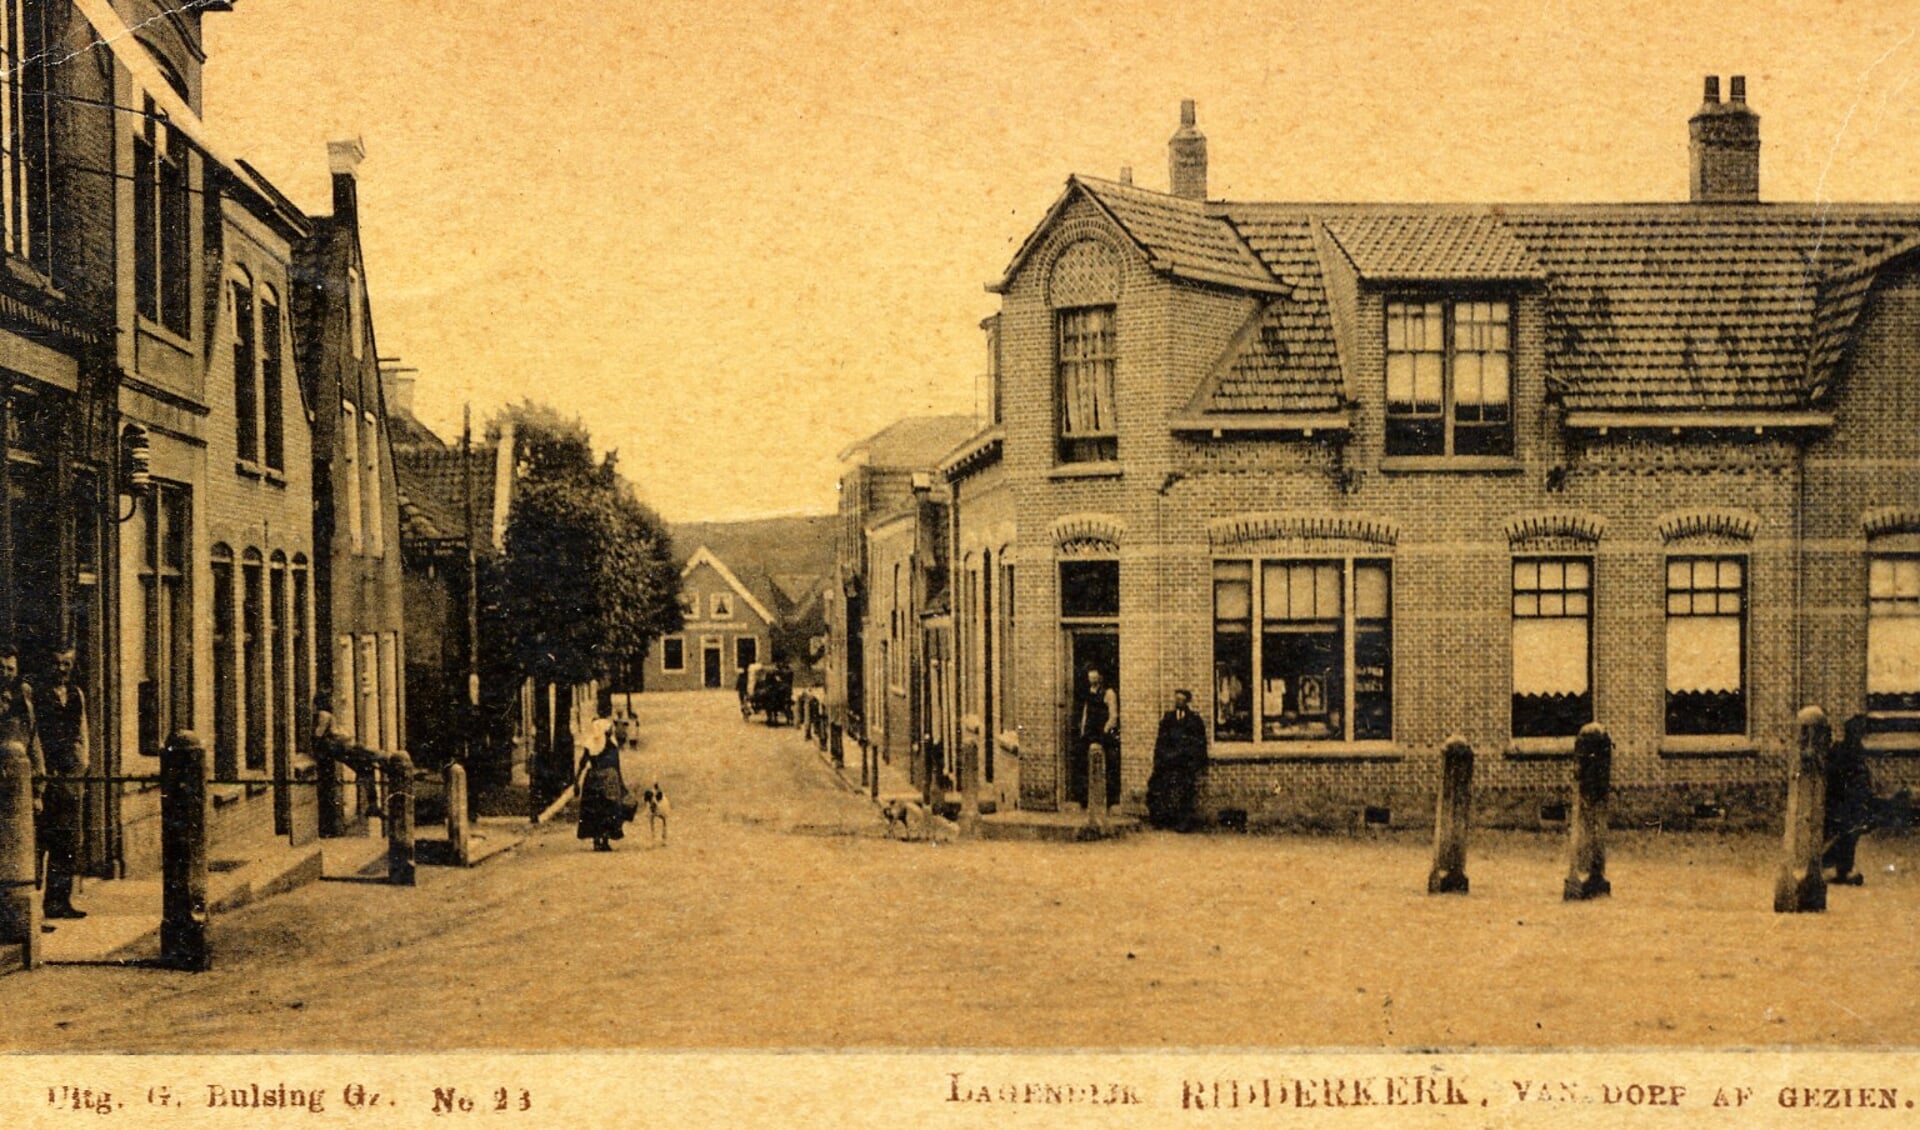 Rechts de vroegere boekhandel, ‘op dorp’, van Bulsing waar de meidenmart begon (foto Stichting Oud Ridderkerk)